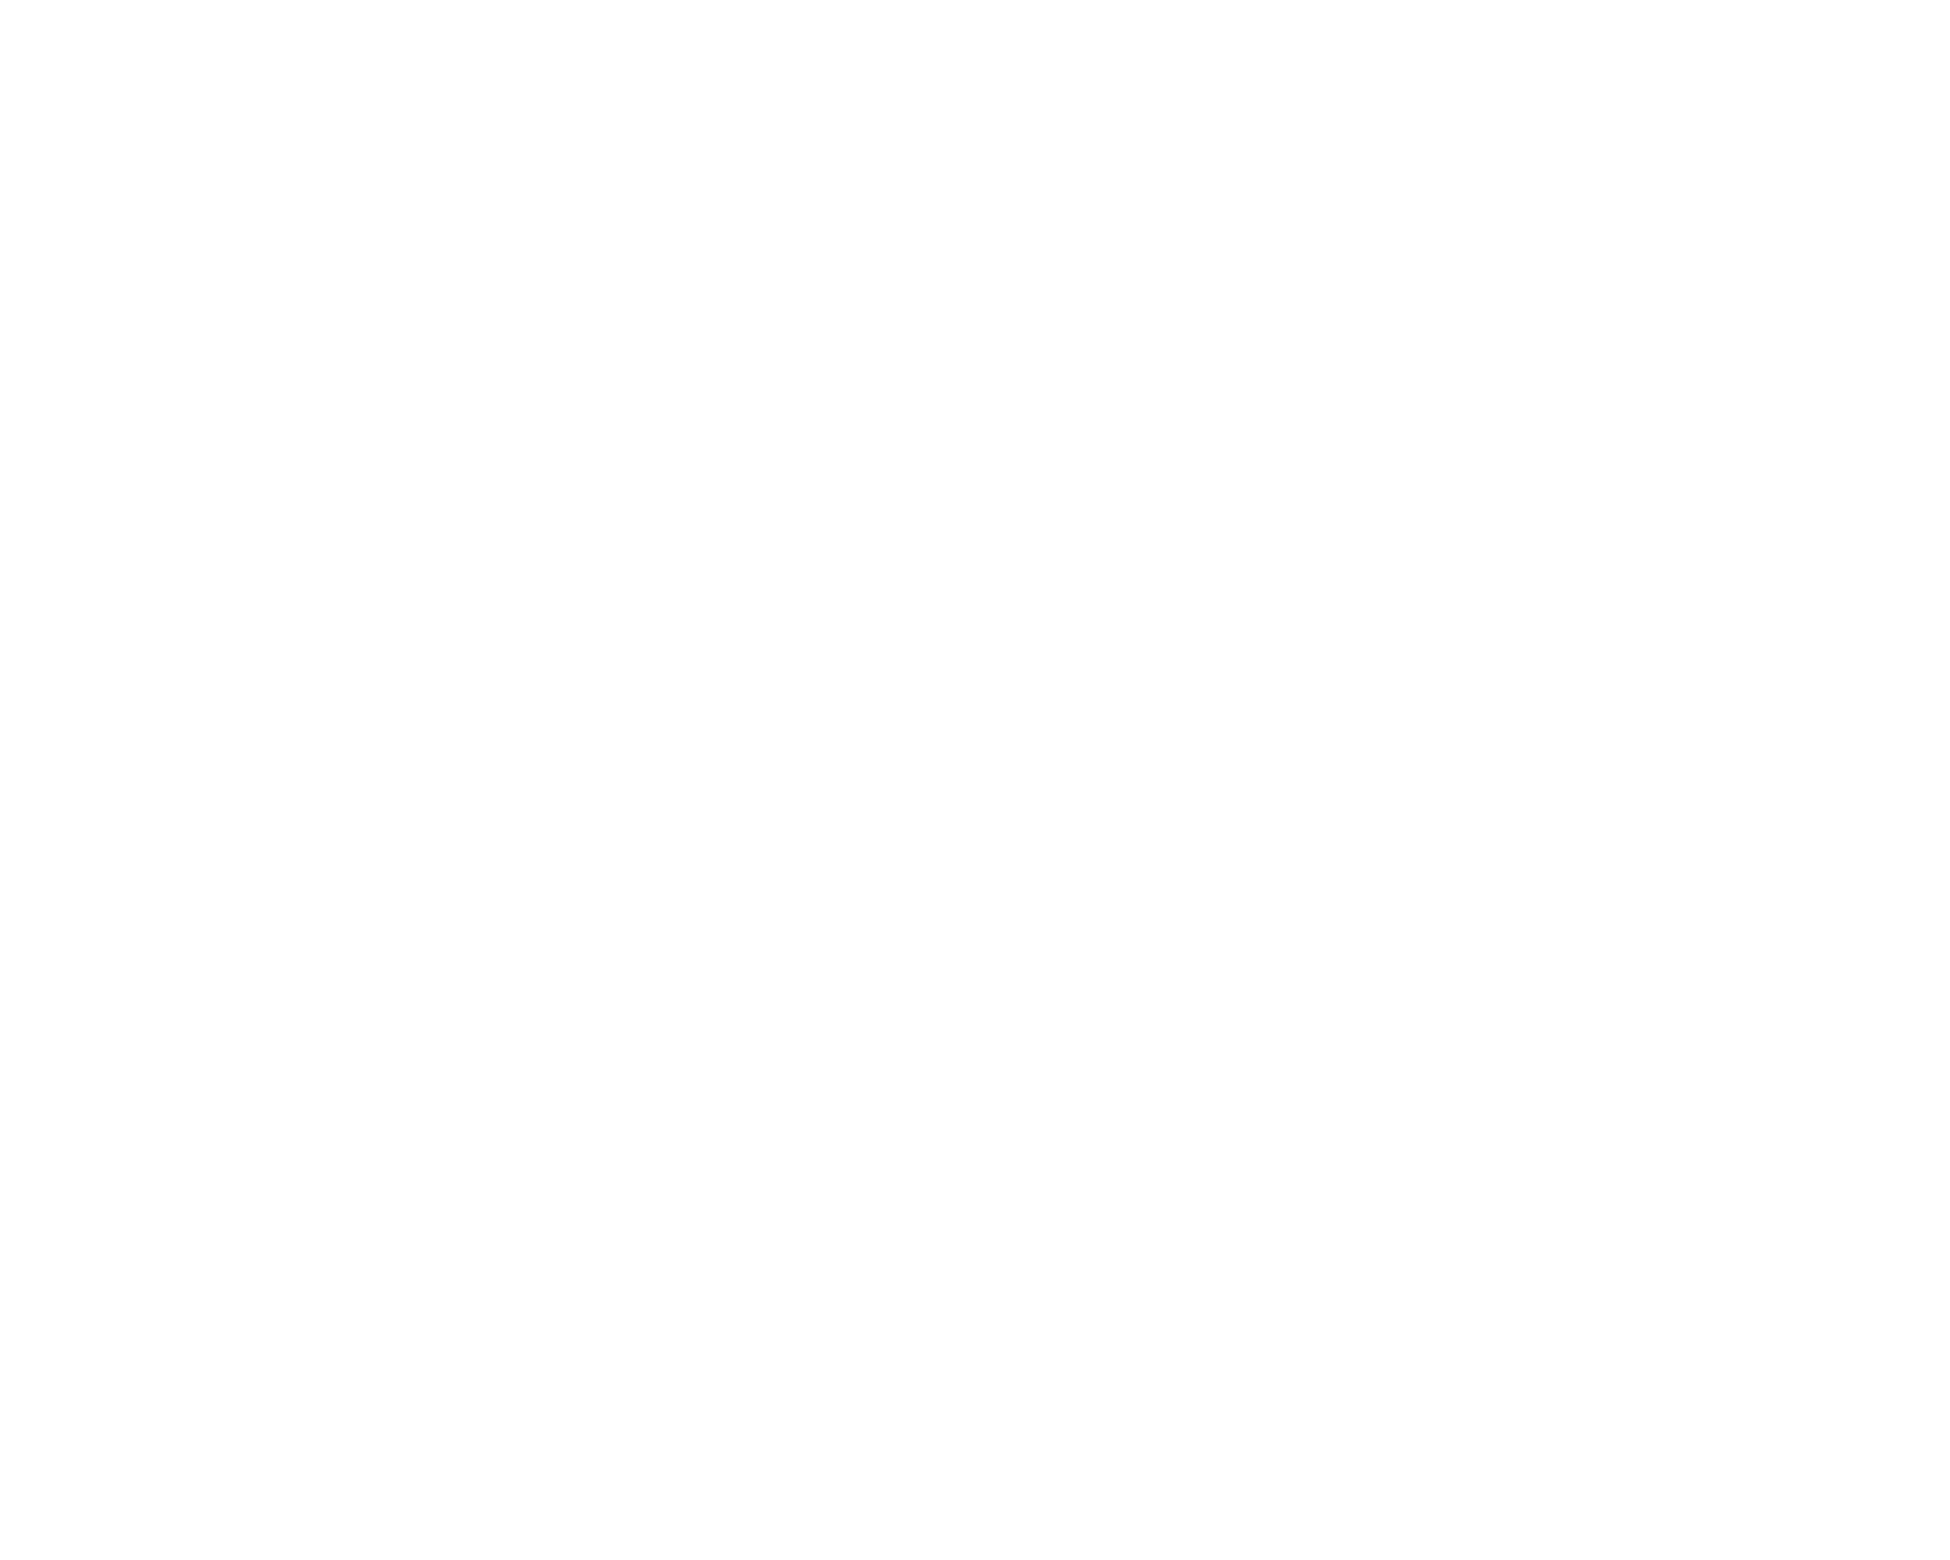 OWL BOT